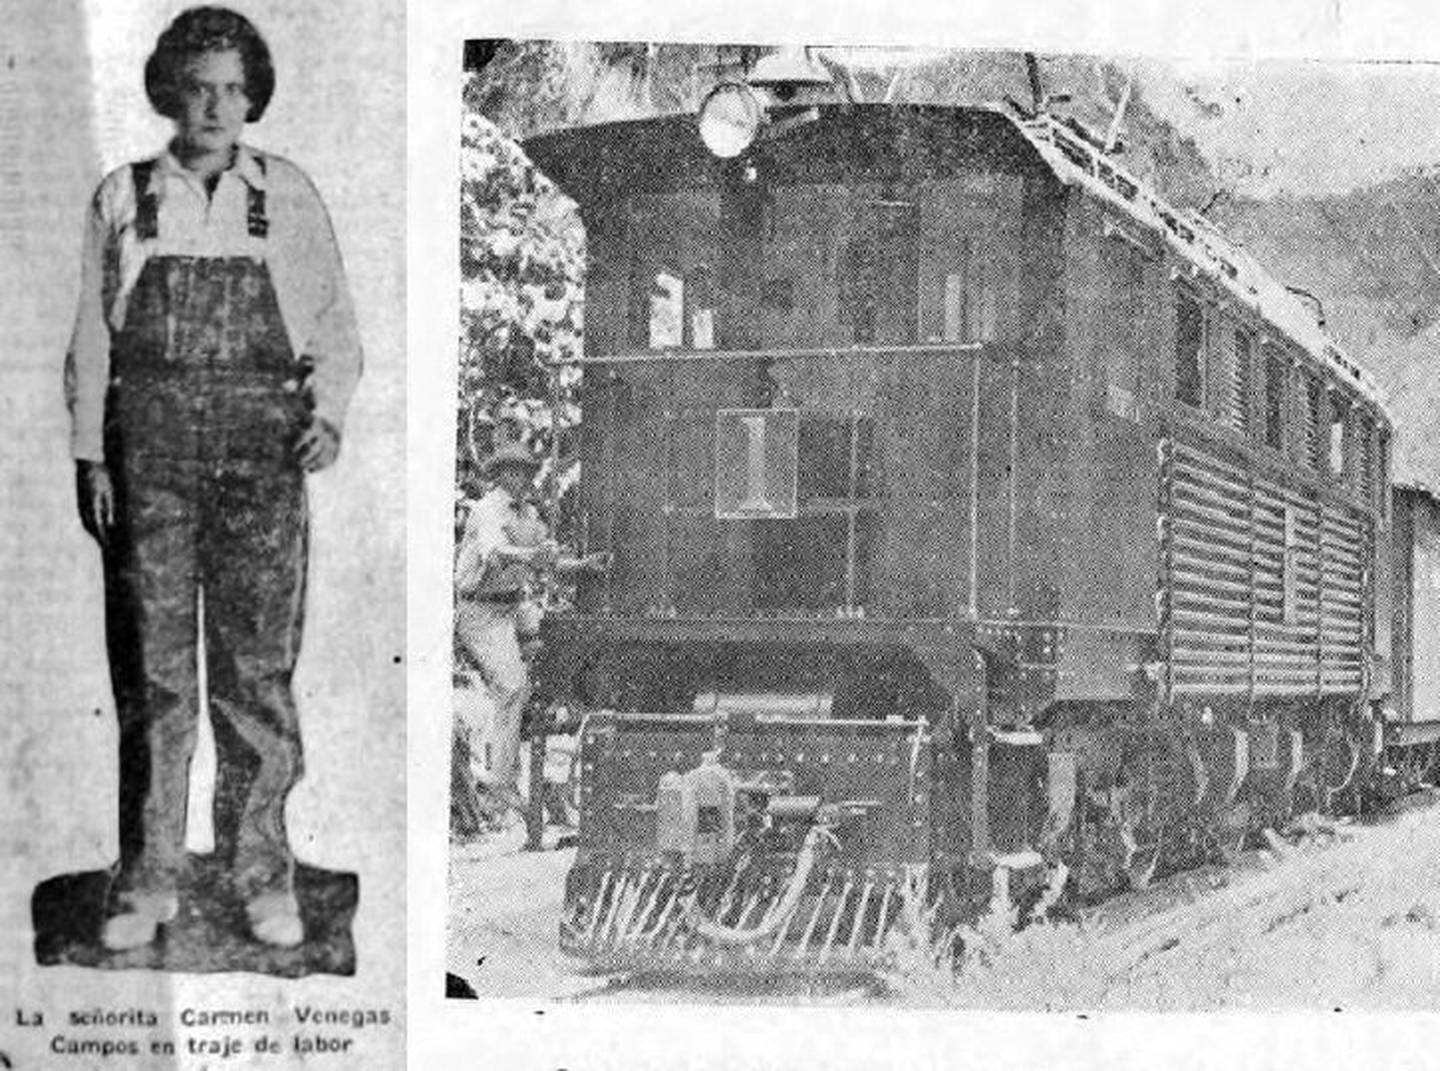 El 28 de mayo de 1932, con 18 años de edad, Carmencita Zeledón Venegas, recién graduada de bachiller en el Colegio de Señoritas, se convirtió en la primera mujer maquinista de una locomotora eléctrica en Costa Rica